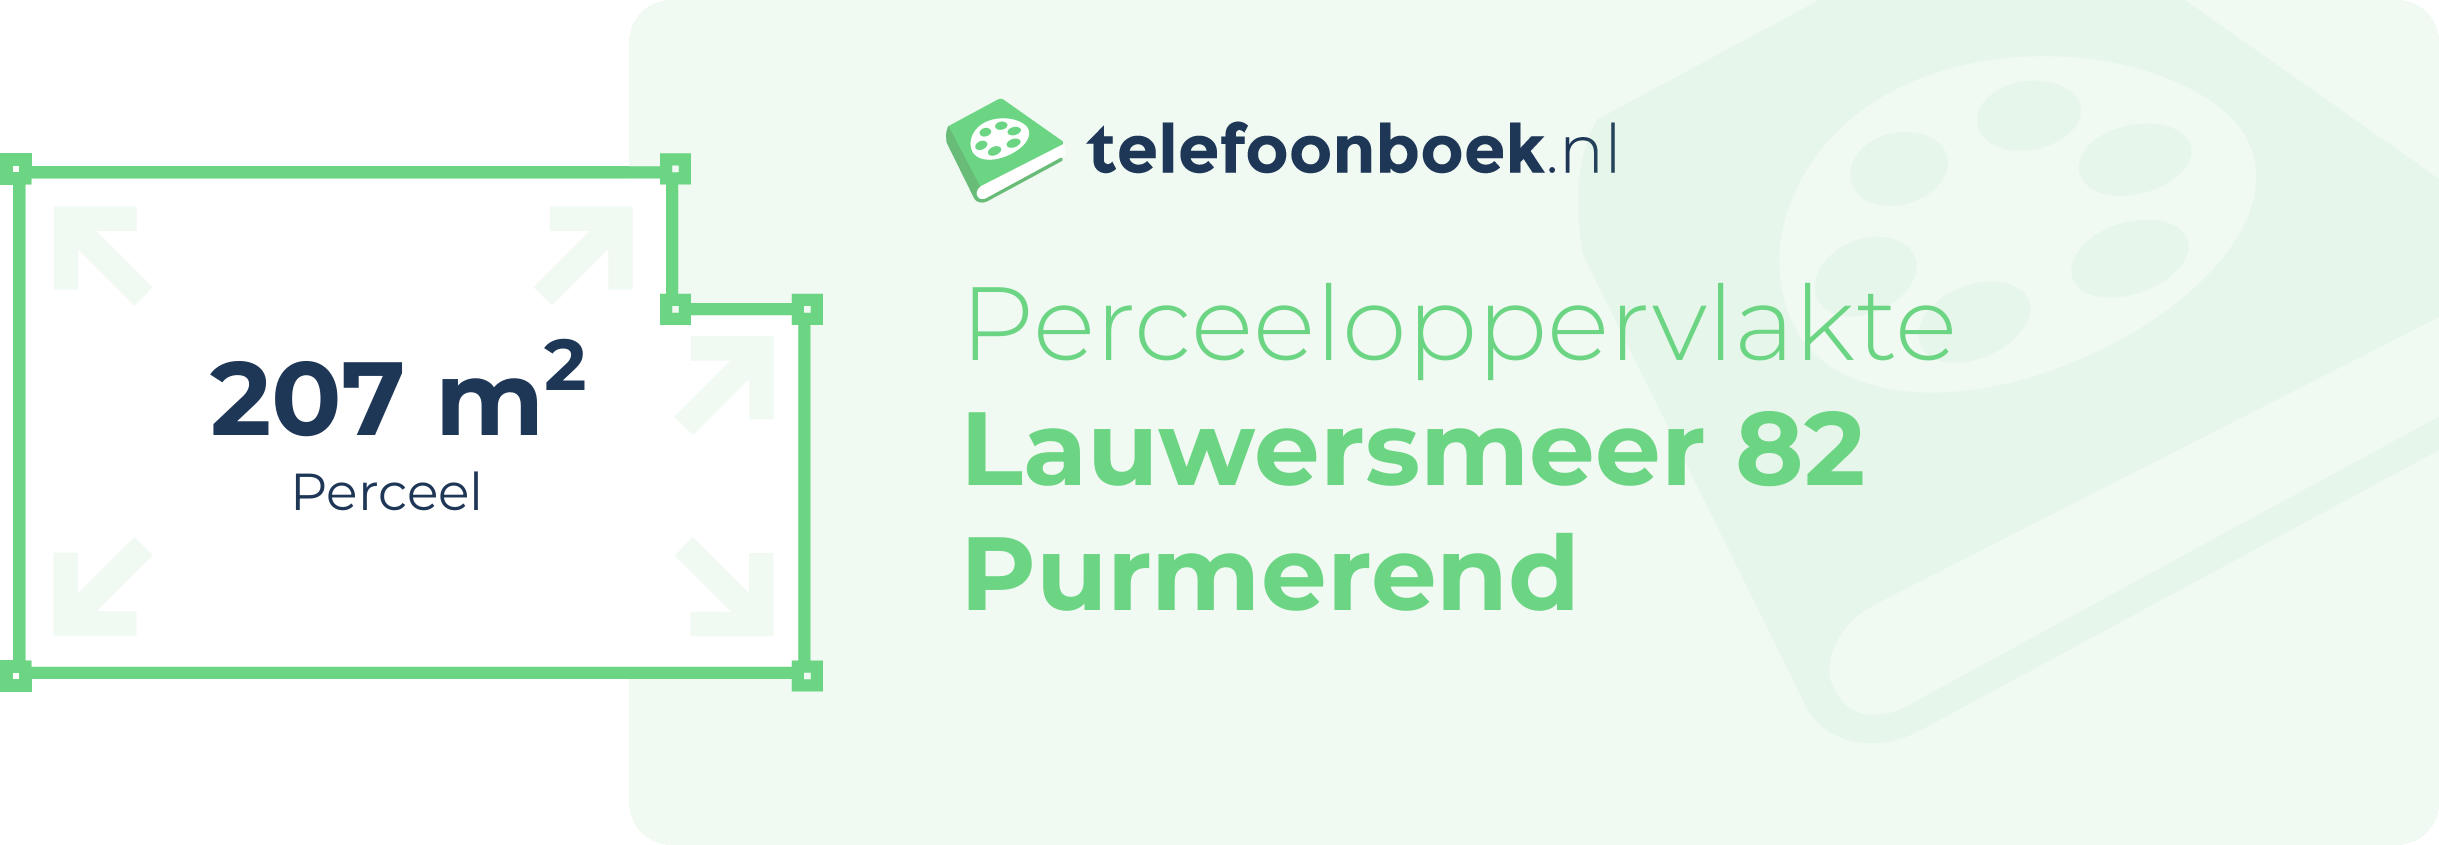 Perceeloppervlakte Lauwersmeer 82 Purmerend